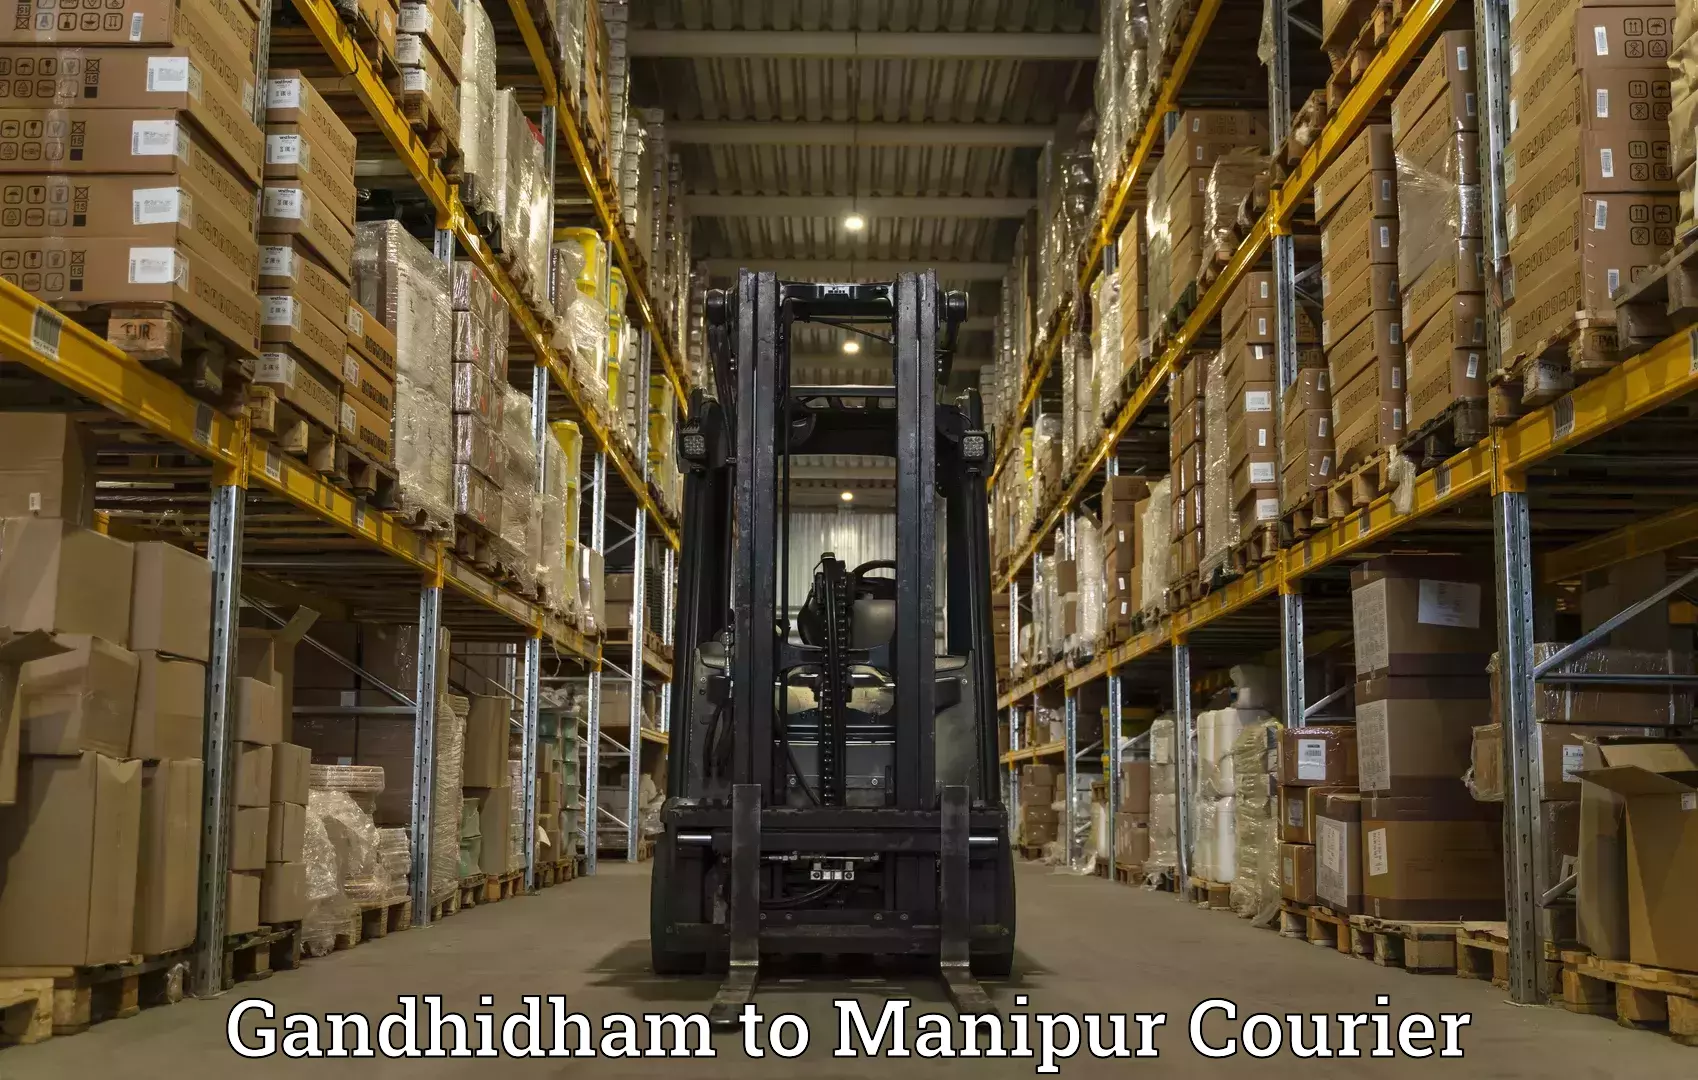 Smart courier technologies Gandhidham to Manipur